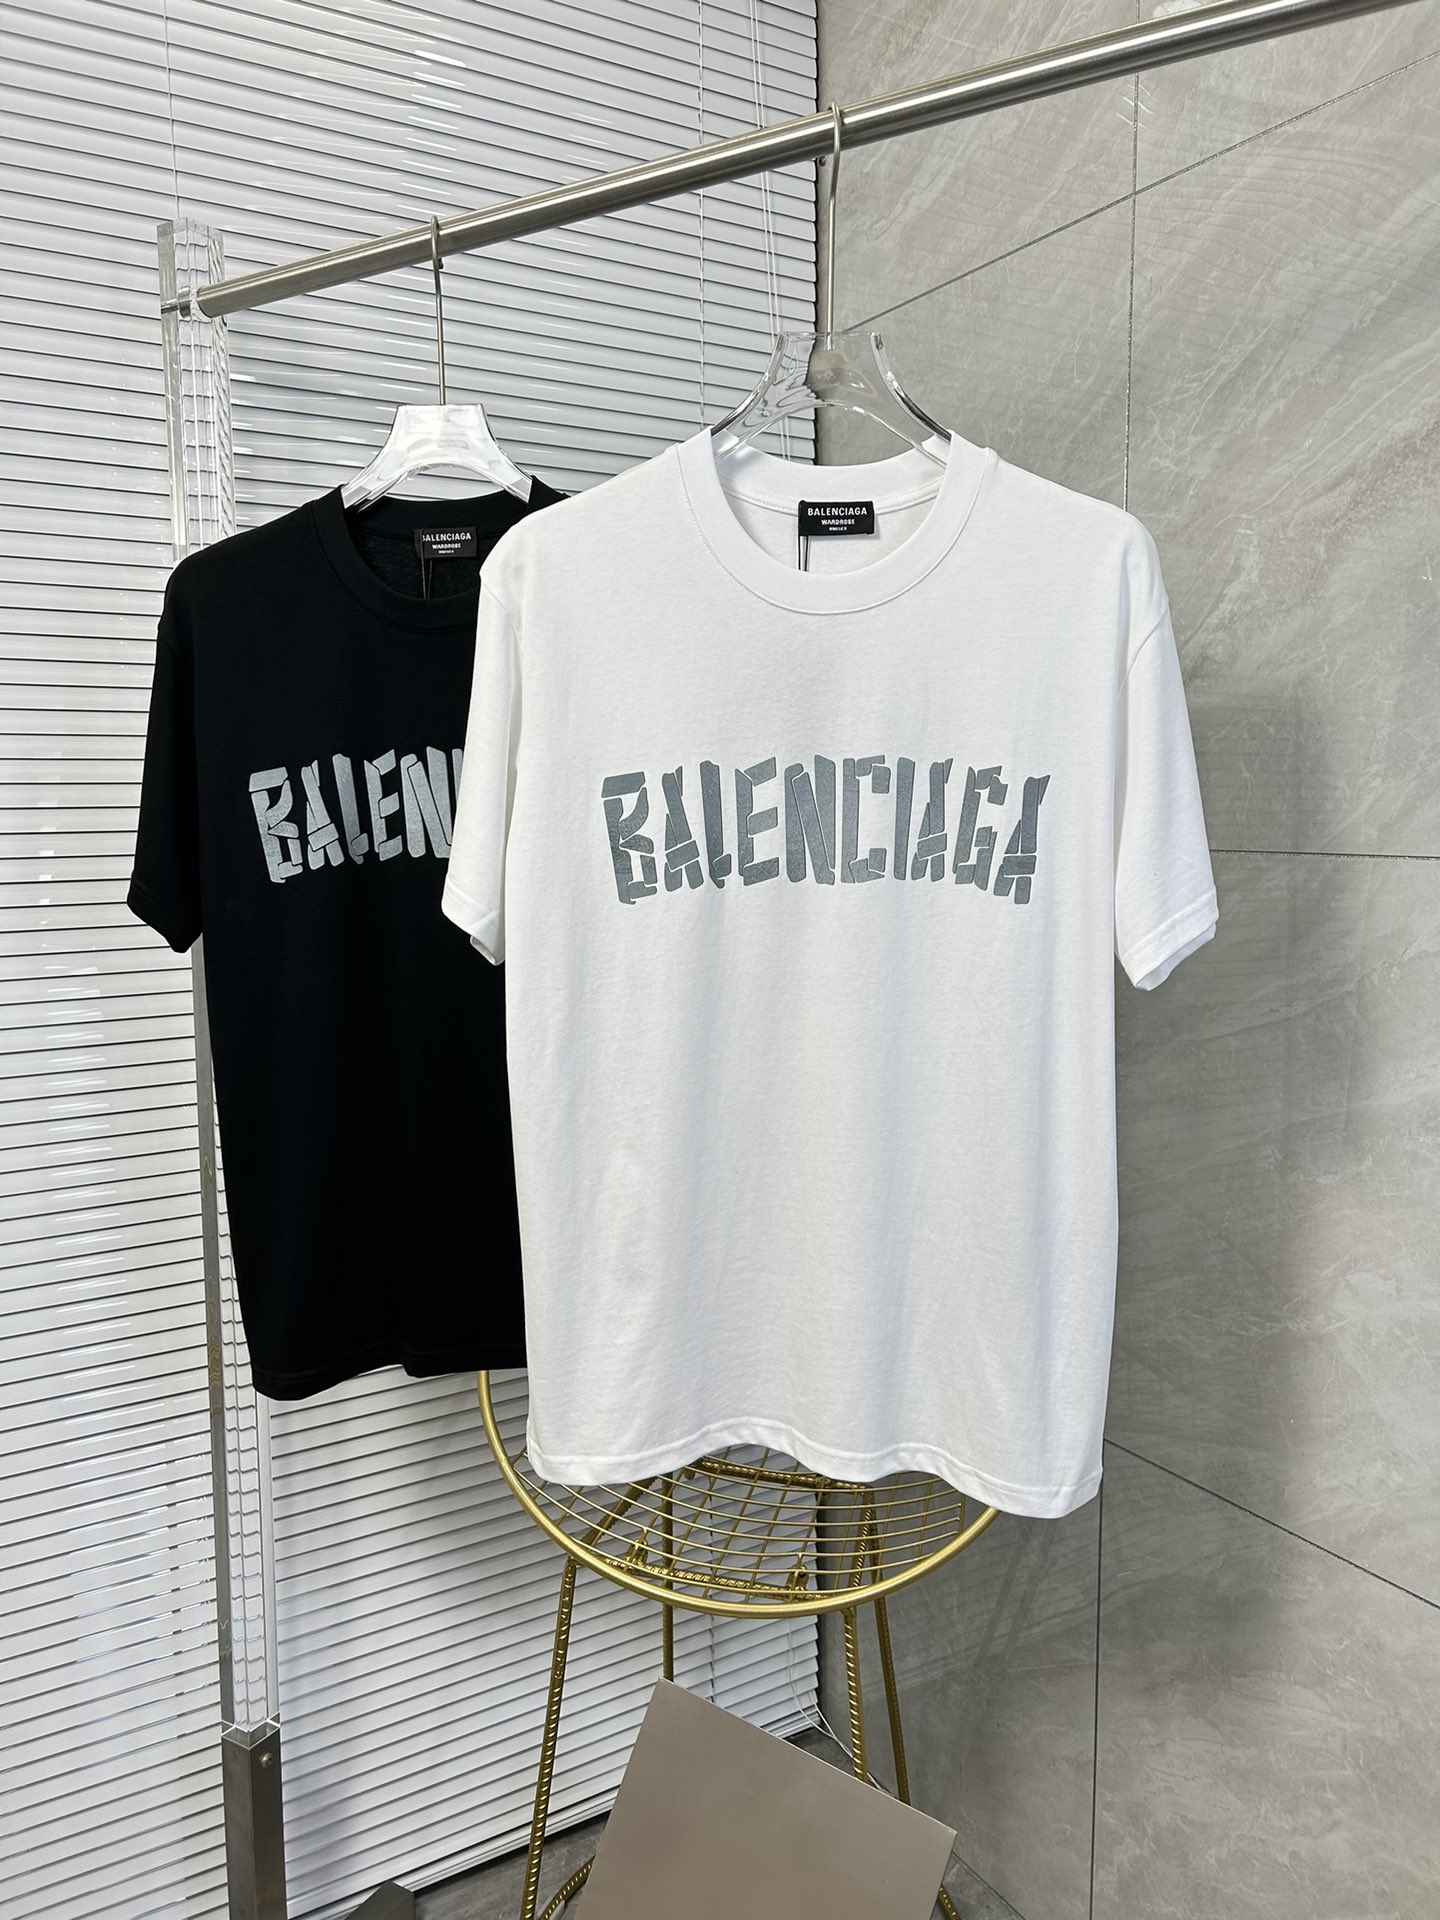 Balenciaga Clothing T-Shirt Best Fake
 Black White Printing Unisex Cotton Fashion Short Sleeve